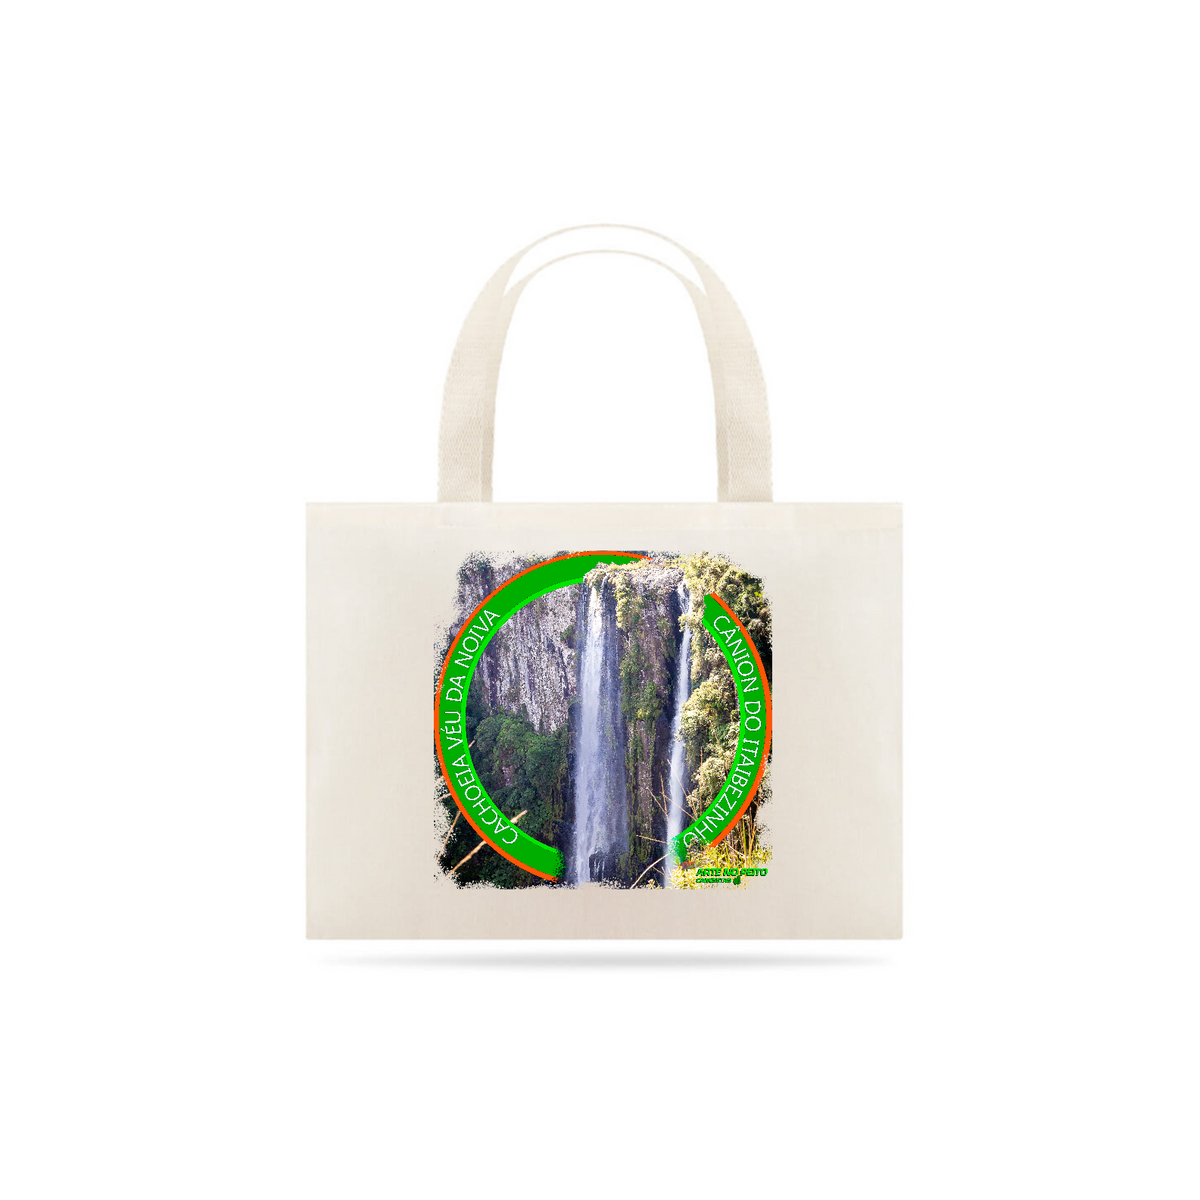 Nome do produto: Cachoeira véu da noiva canion itaibezinho   - Eco bag